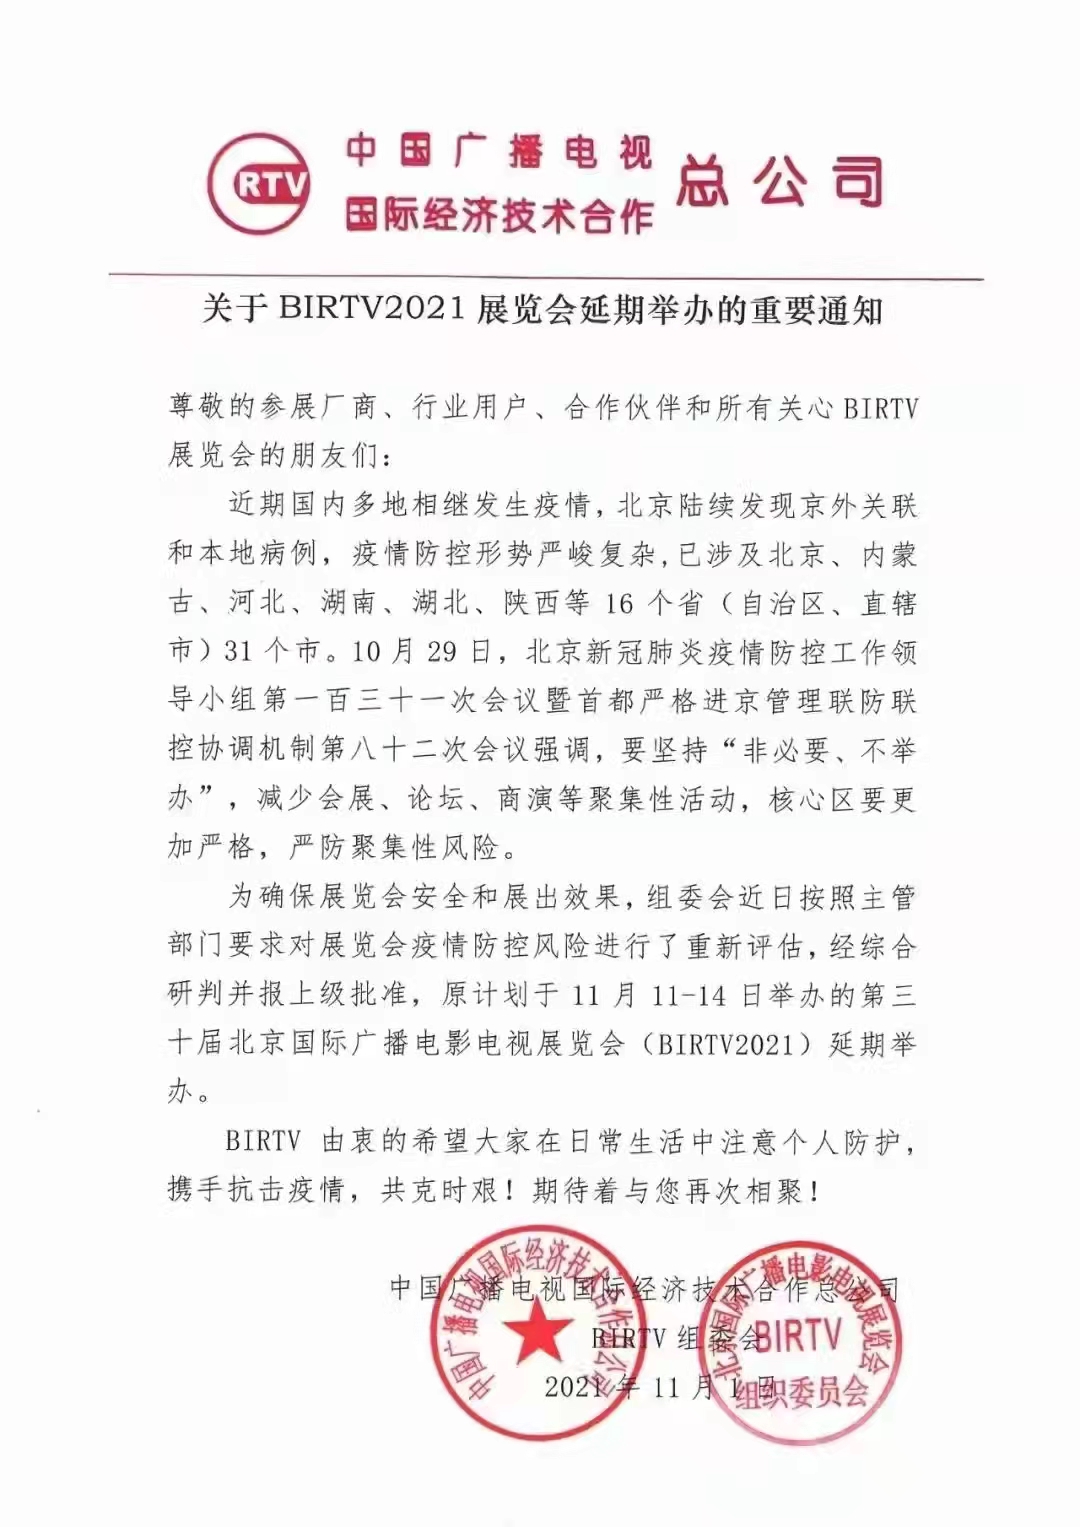 关于BIRTV2021展览会延迟举办的通知